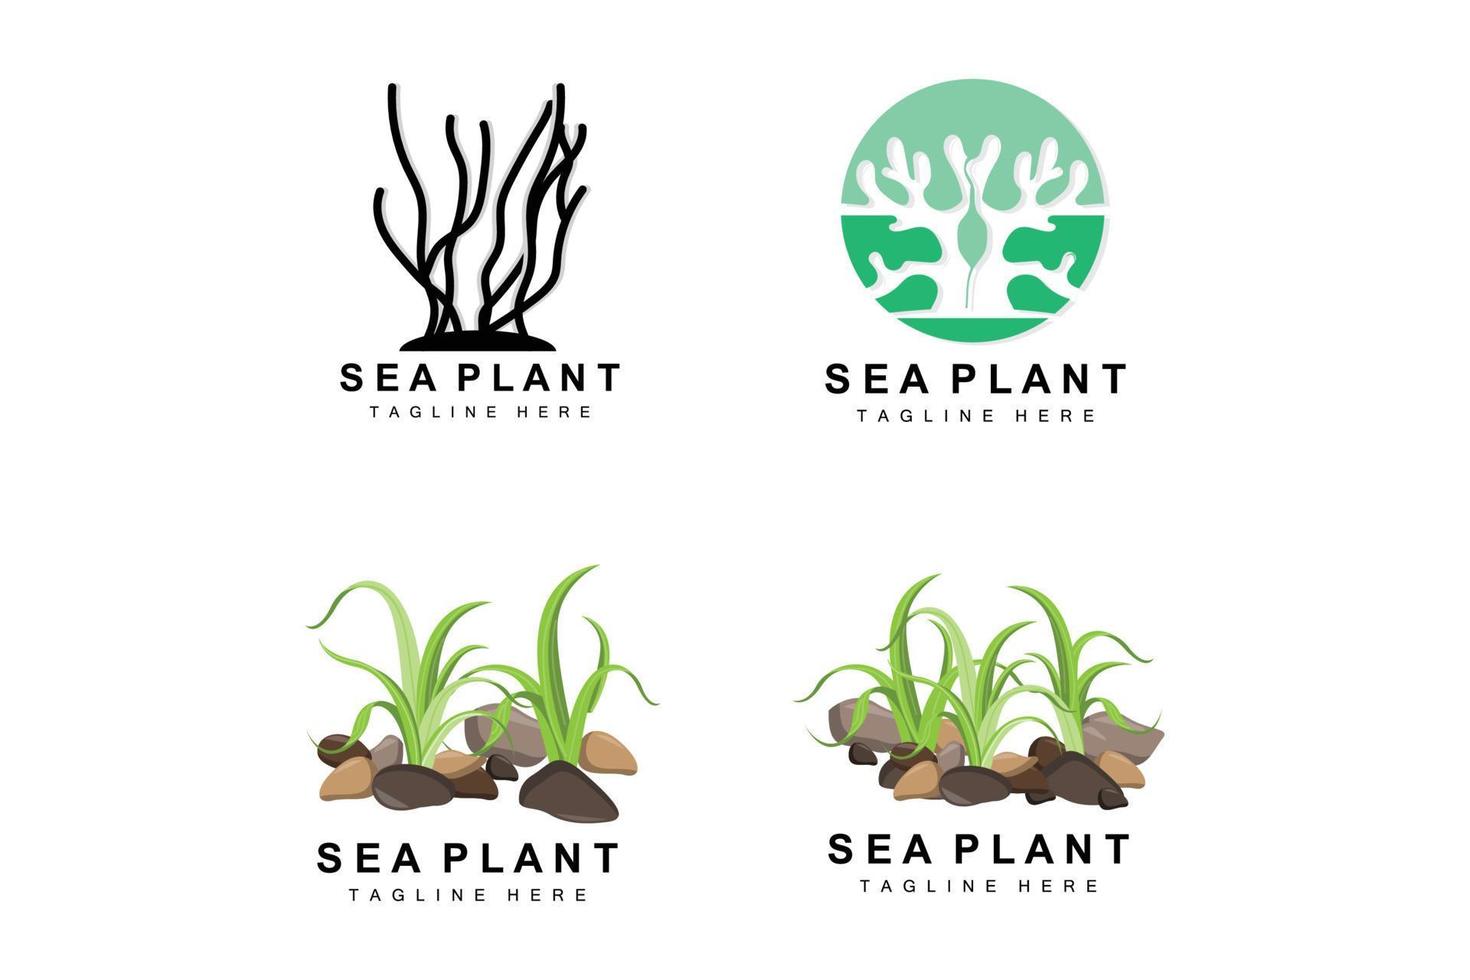 algenlogo, vektordesign von meerespflanzen, lebensmittelgeschäft und naturschutz vektor